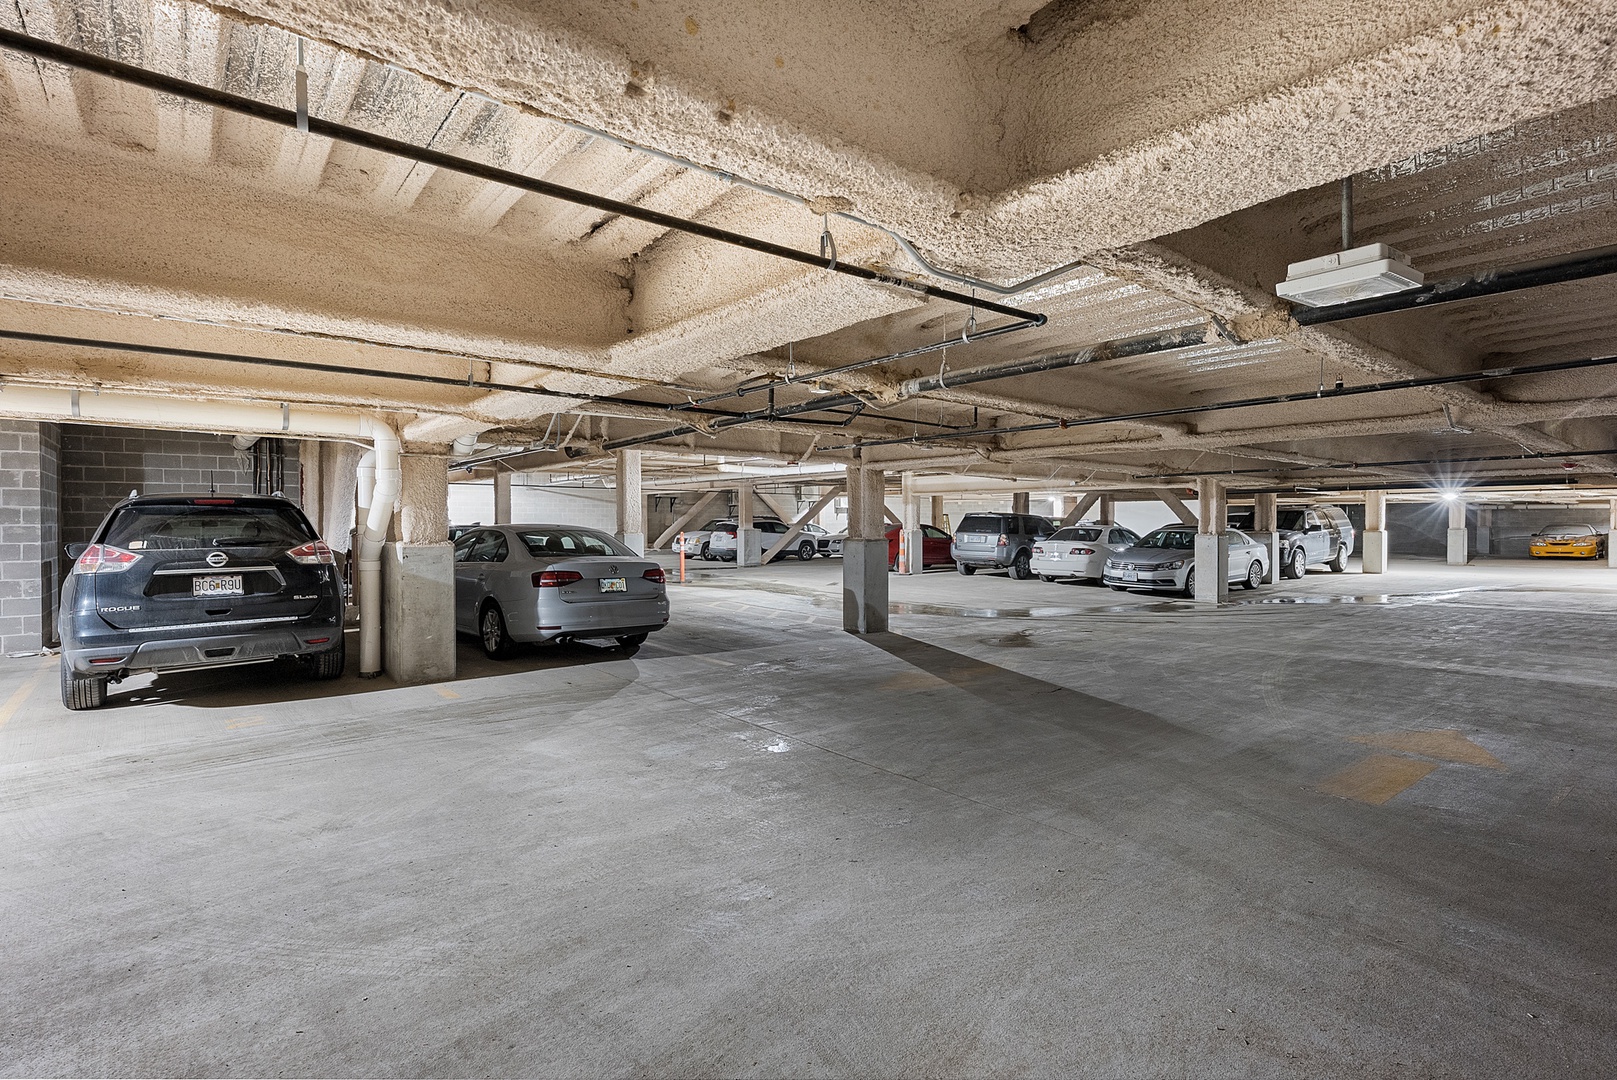 Underground Garage Parking for Airriva guests